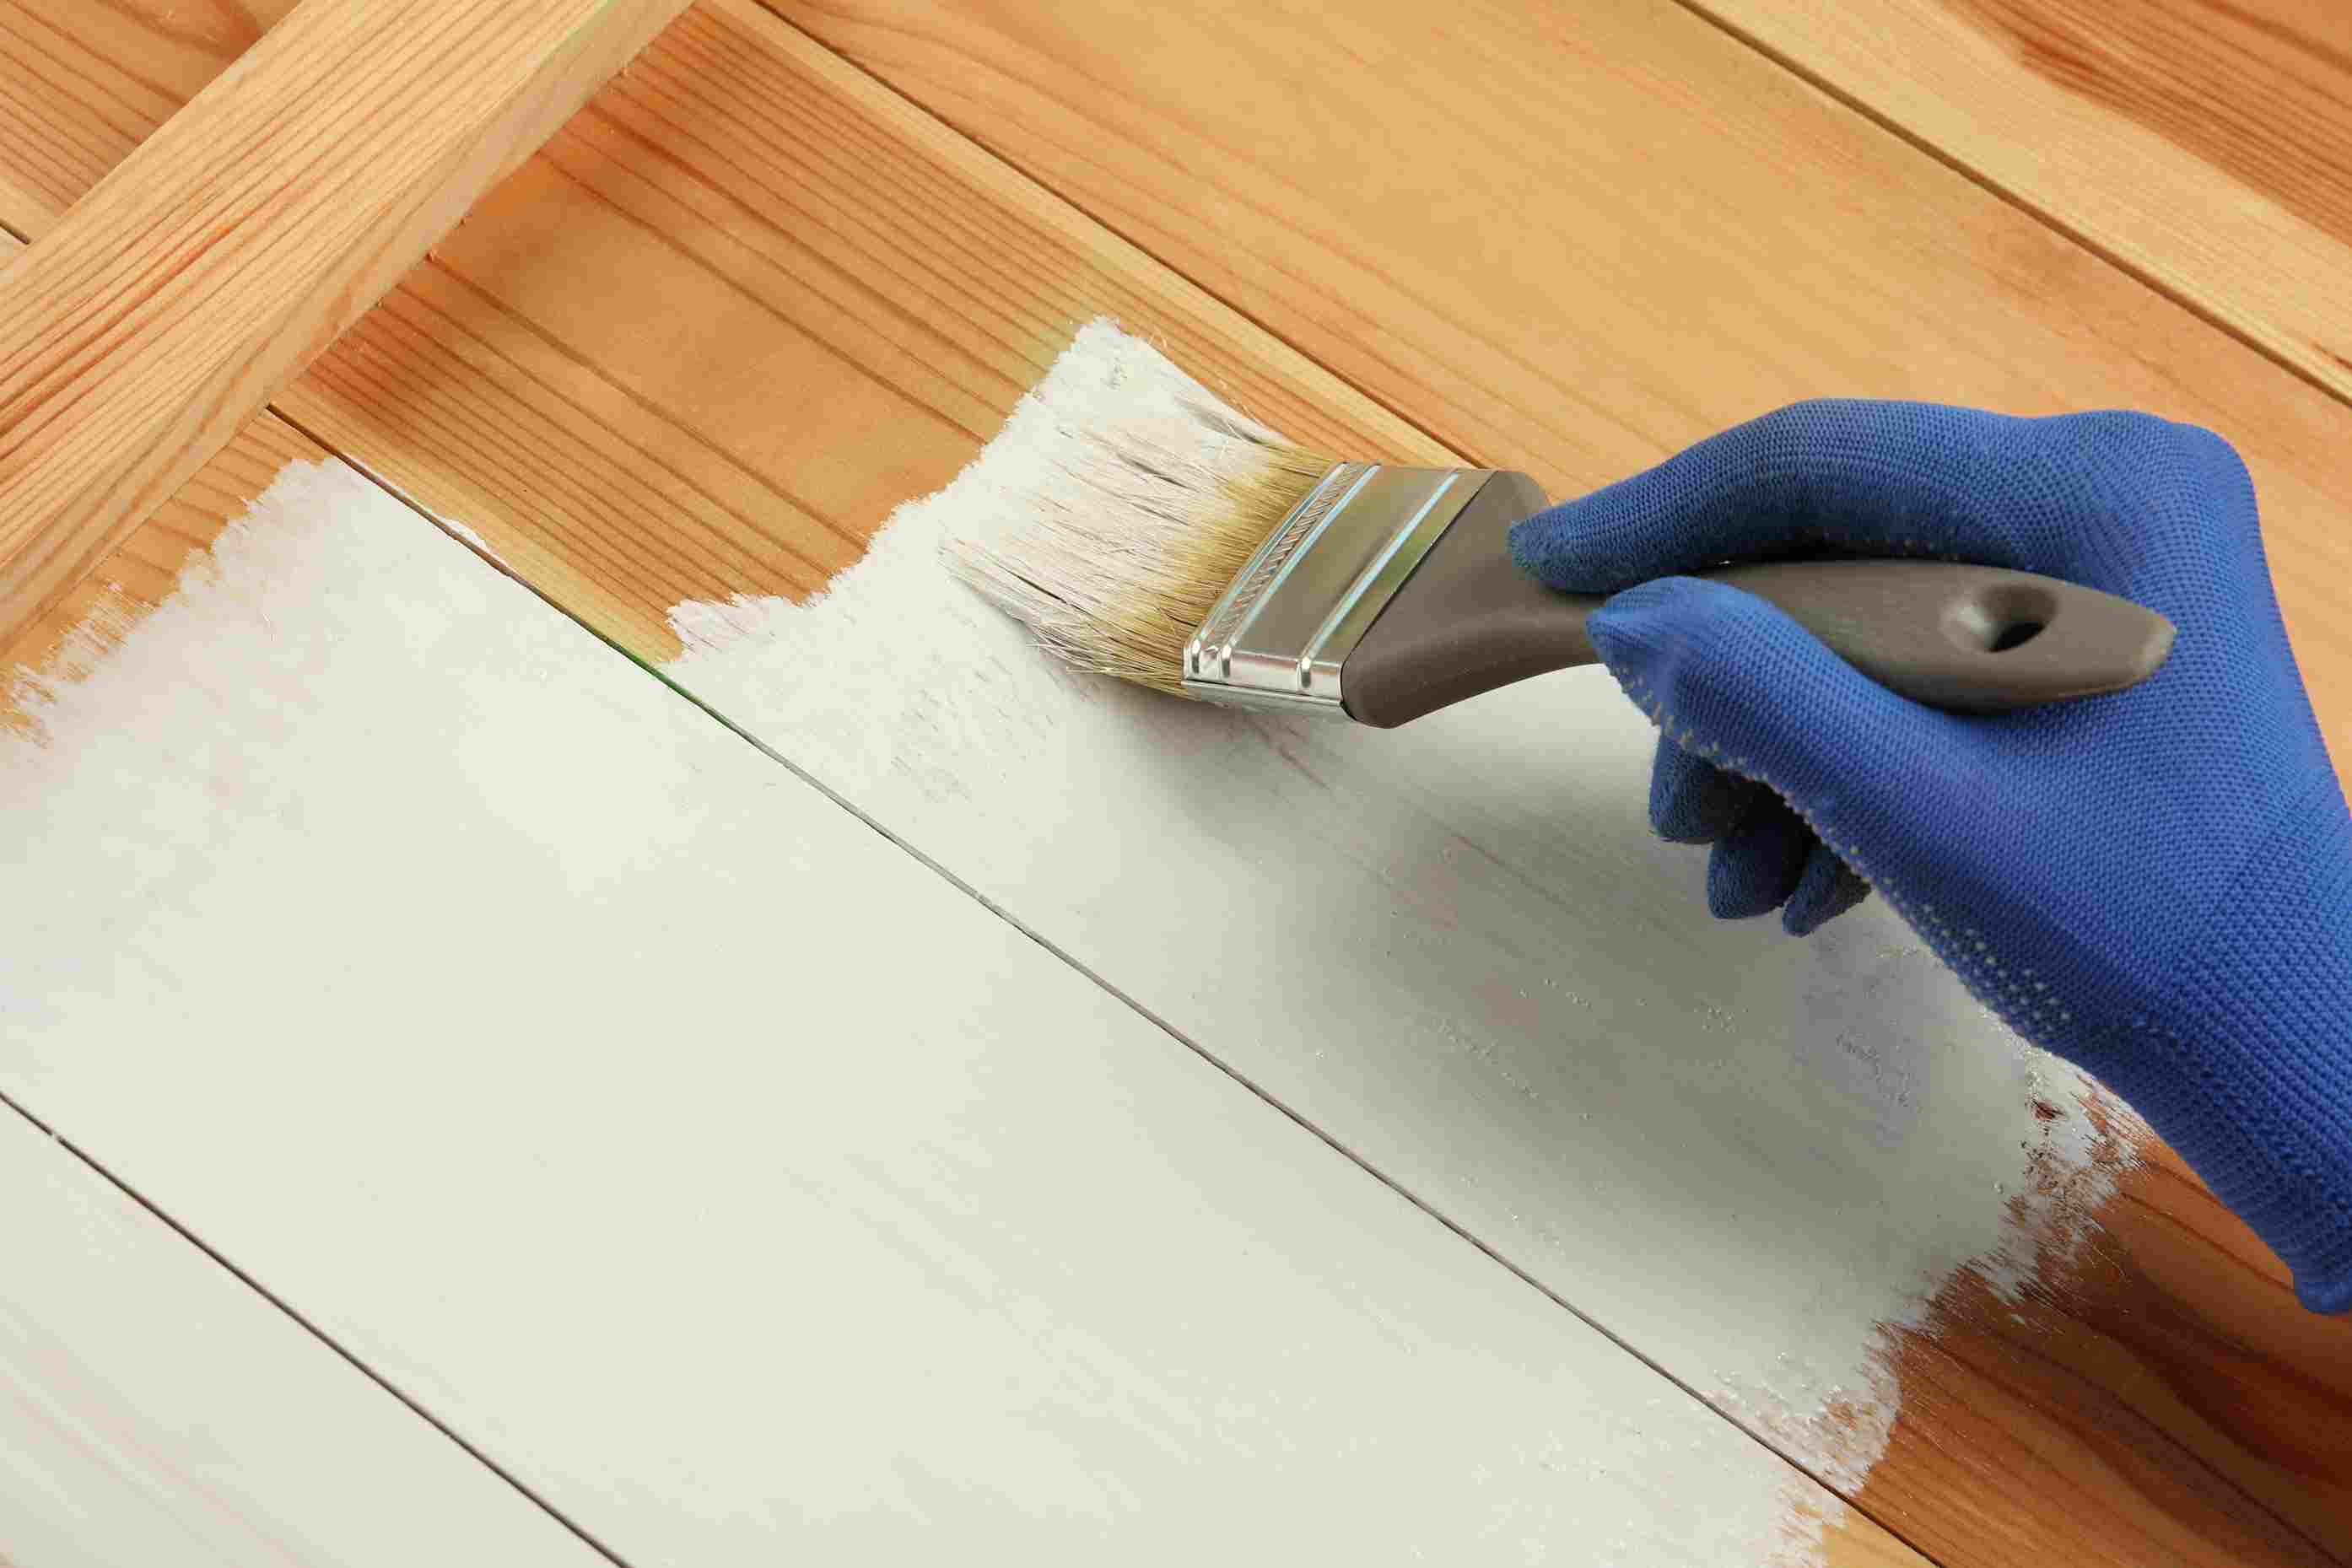 Gunakan cat untuk meluruskan pintu kayu yang melengkung